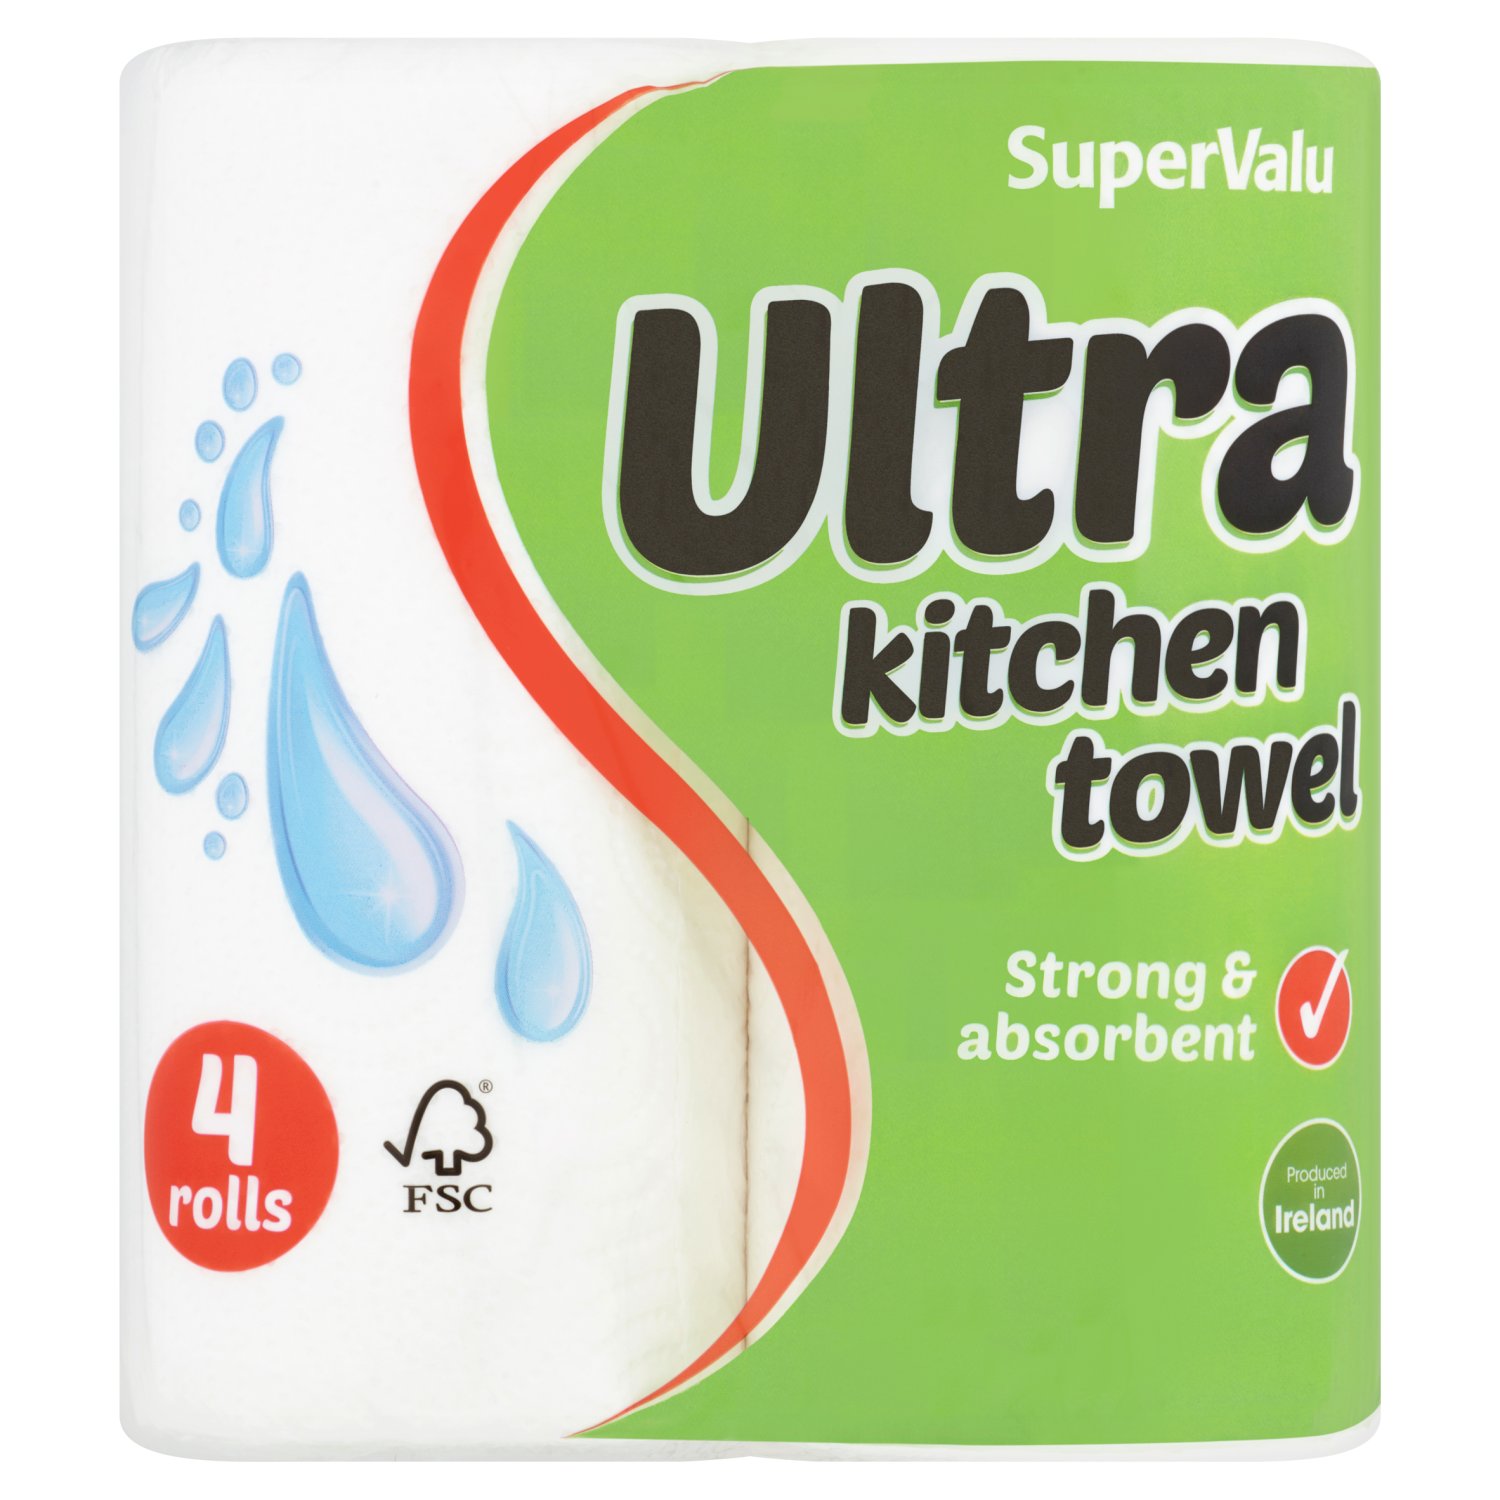 SuperValu Ultra Kitchen Towel (4 Roll)